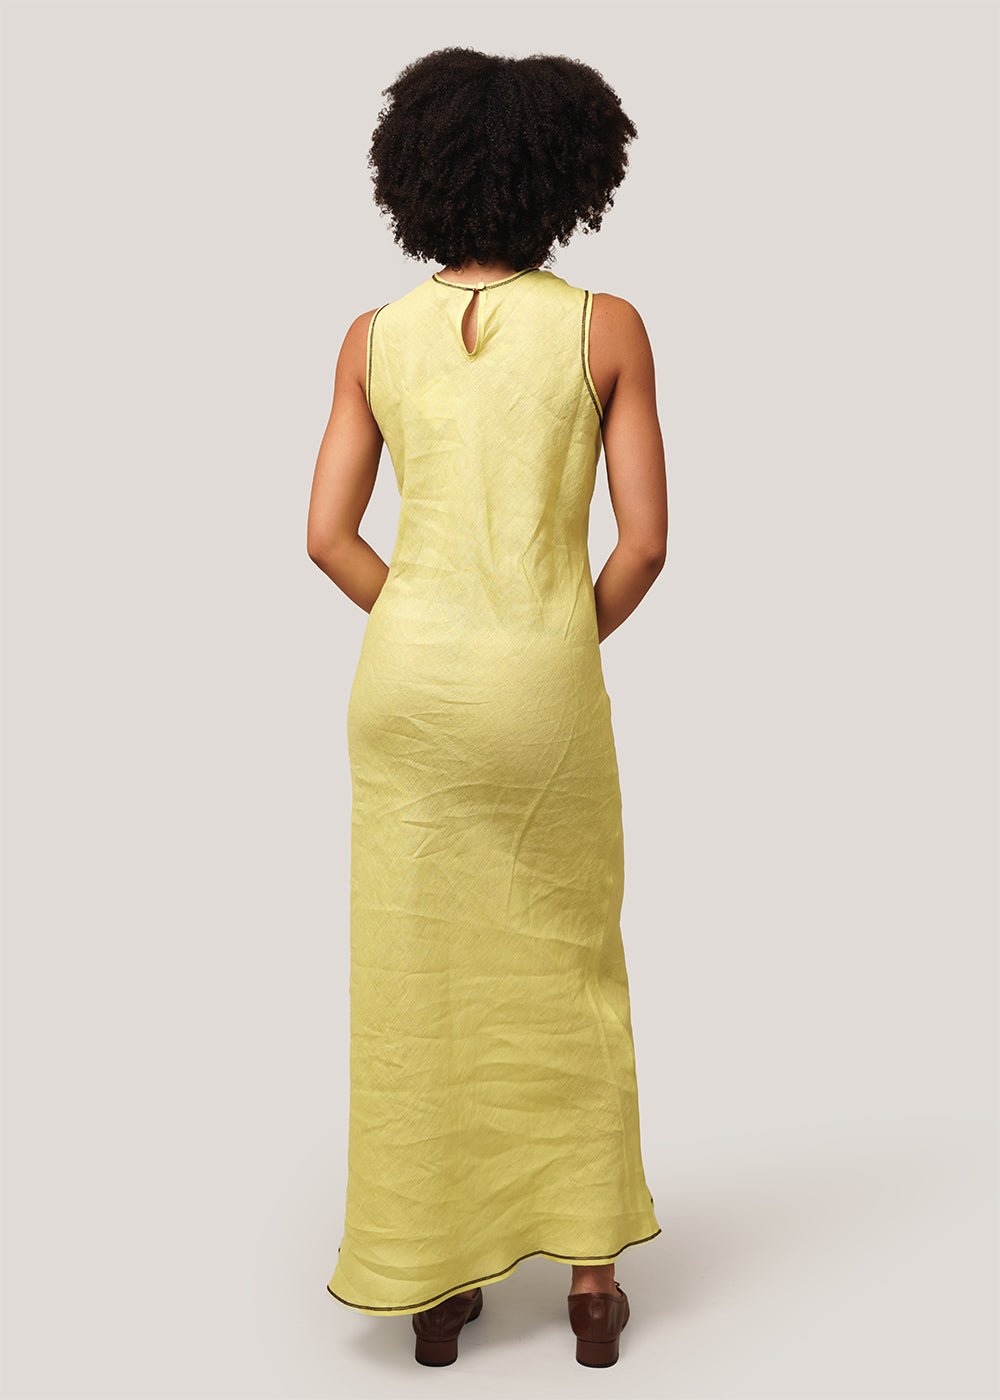 Baserange Lime Dydine Tank Dress - New Classics Studios Sustainable Ethical Fashion Canada